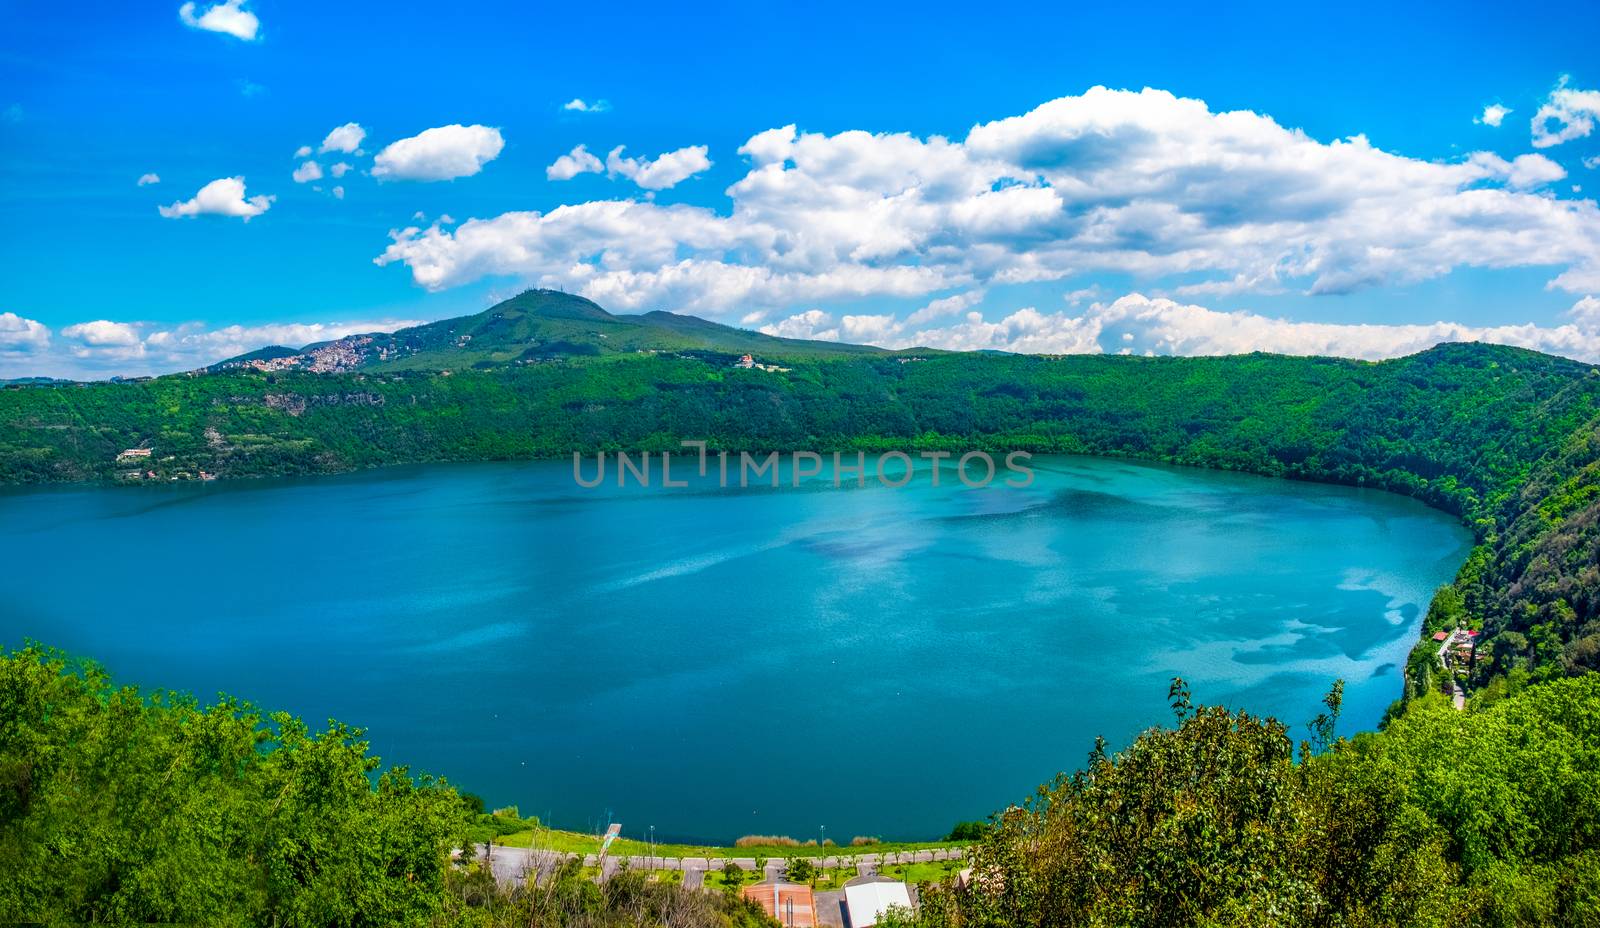 Lake Albano or Lago di Albano in Lazio - deepest crater lake in Italy on the Alban Hills of Castelli Romani area near Rome .